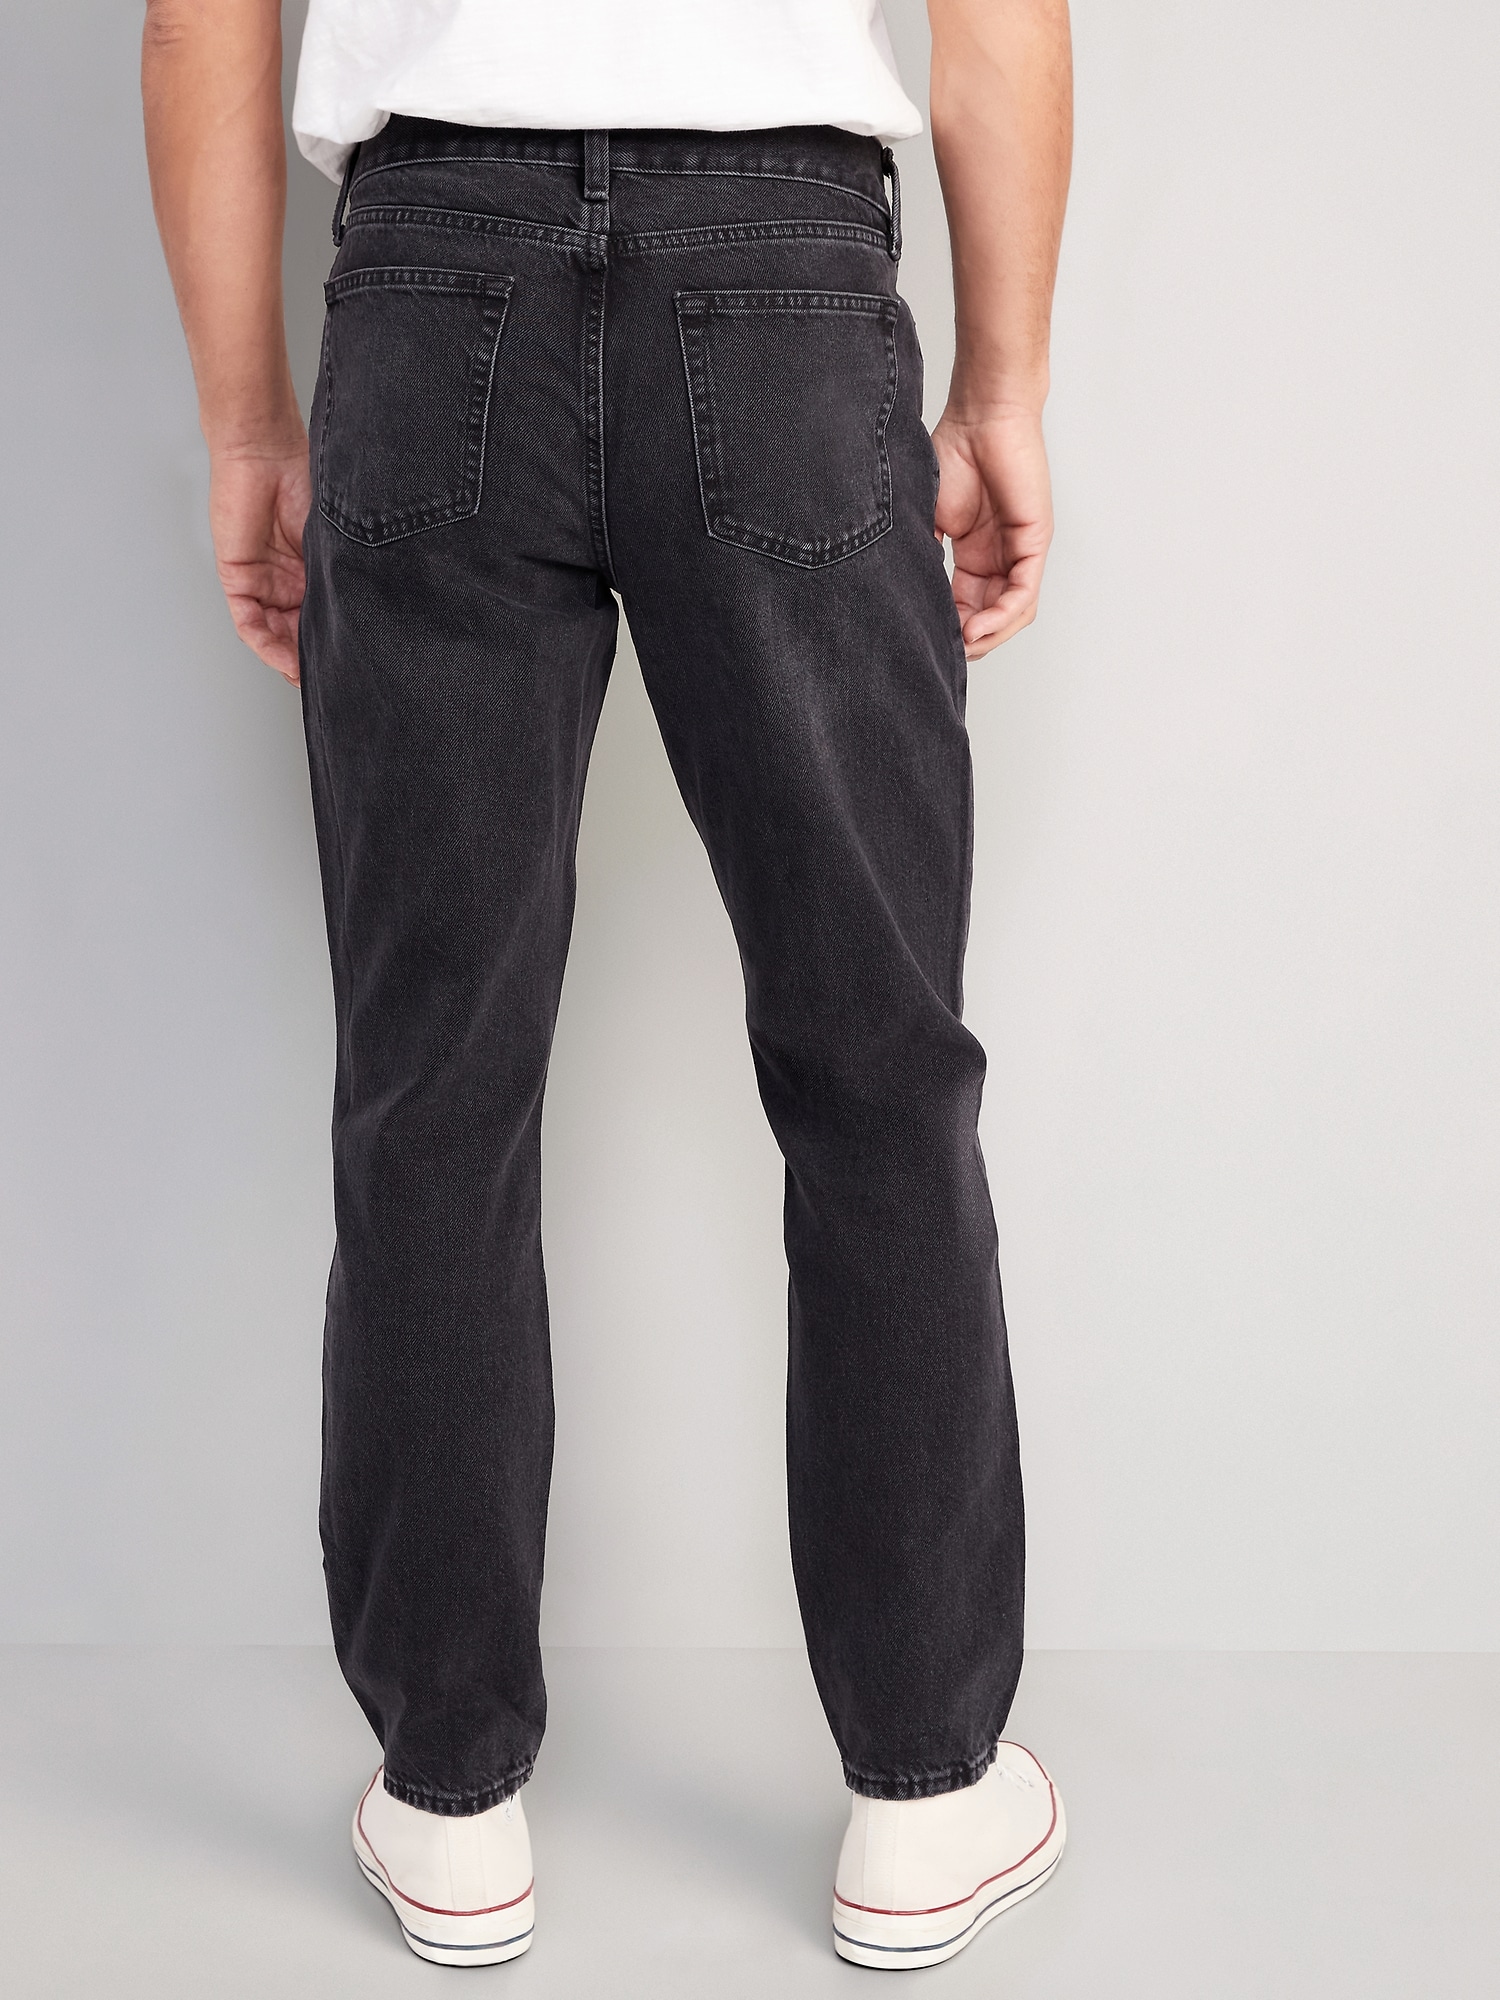 rol Ik denk dat ik ziek ben Worden Original Straight Taper Non-Stretch Black Jeans for Men | Old Navy